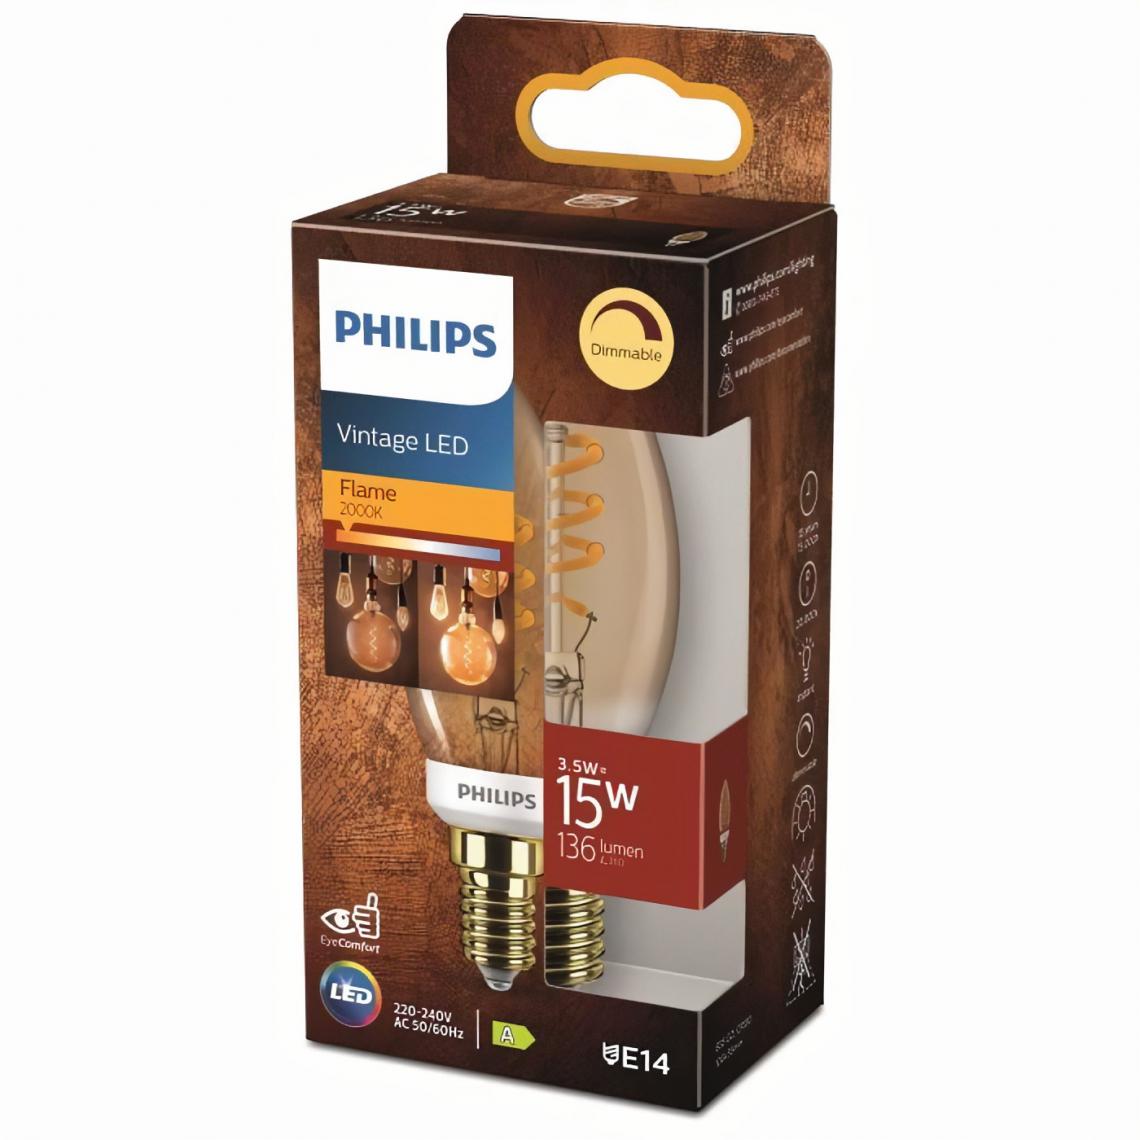 Philips - PHILIPS LED Classic 15W Flamme Vintage Filament Spirale E14 Claire Ambrée Blanc Chaud Compatible Variateur - Ampoules LED